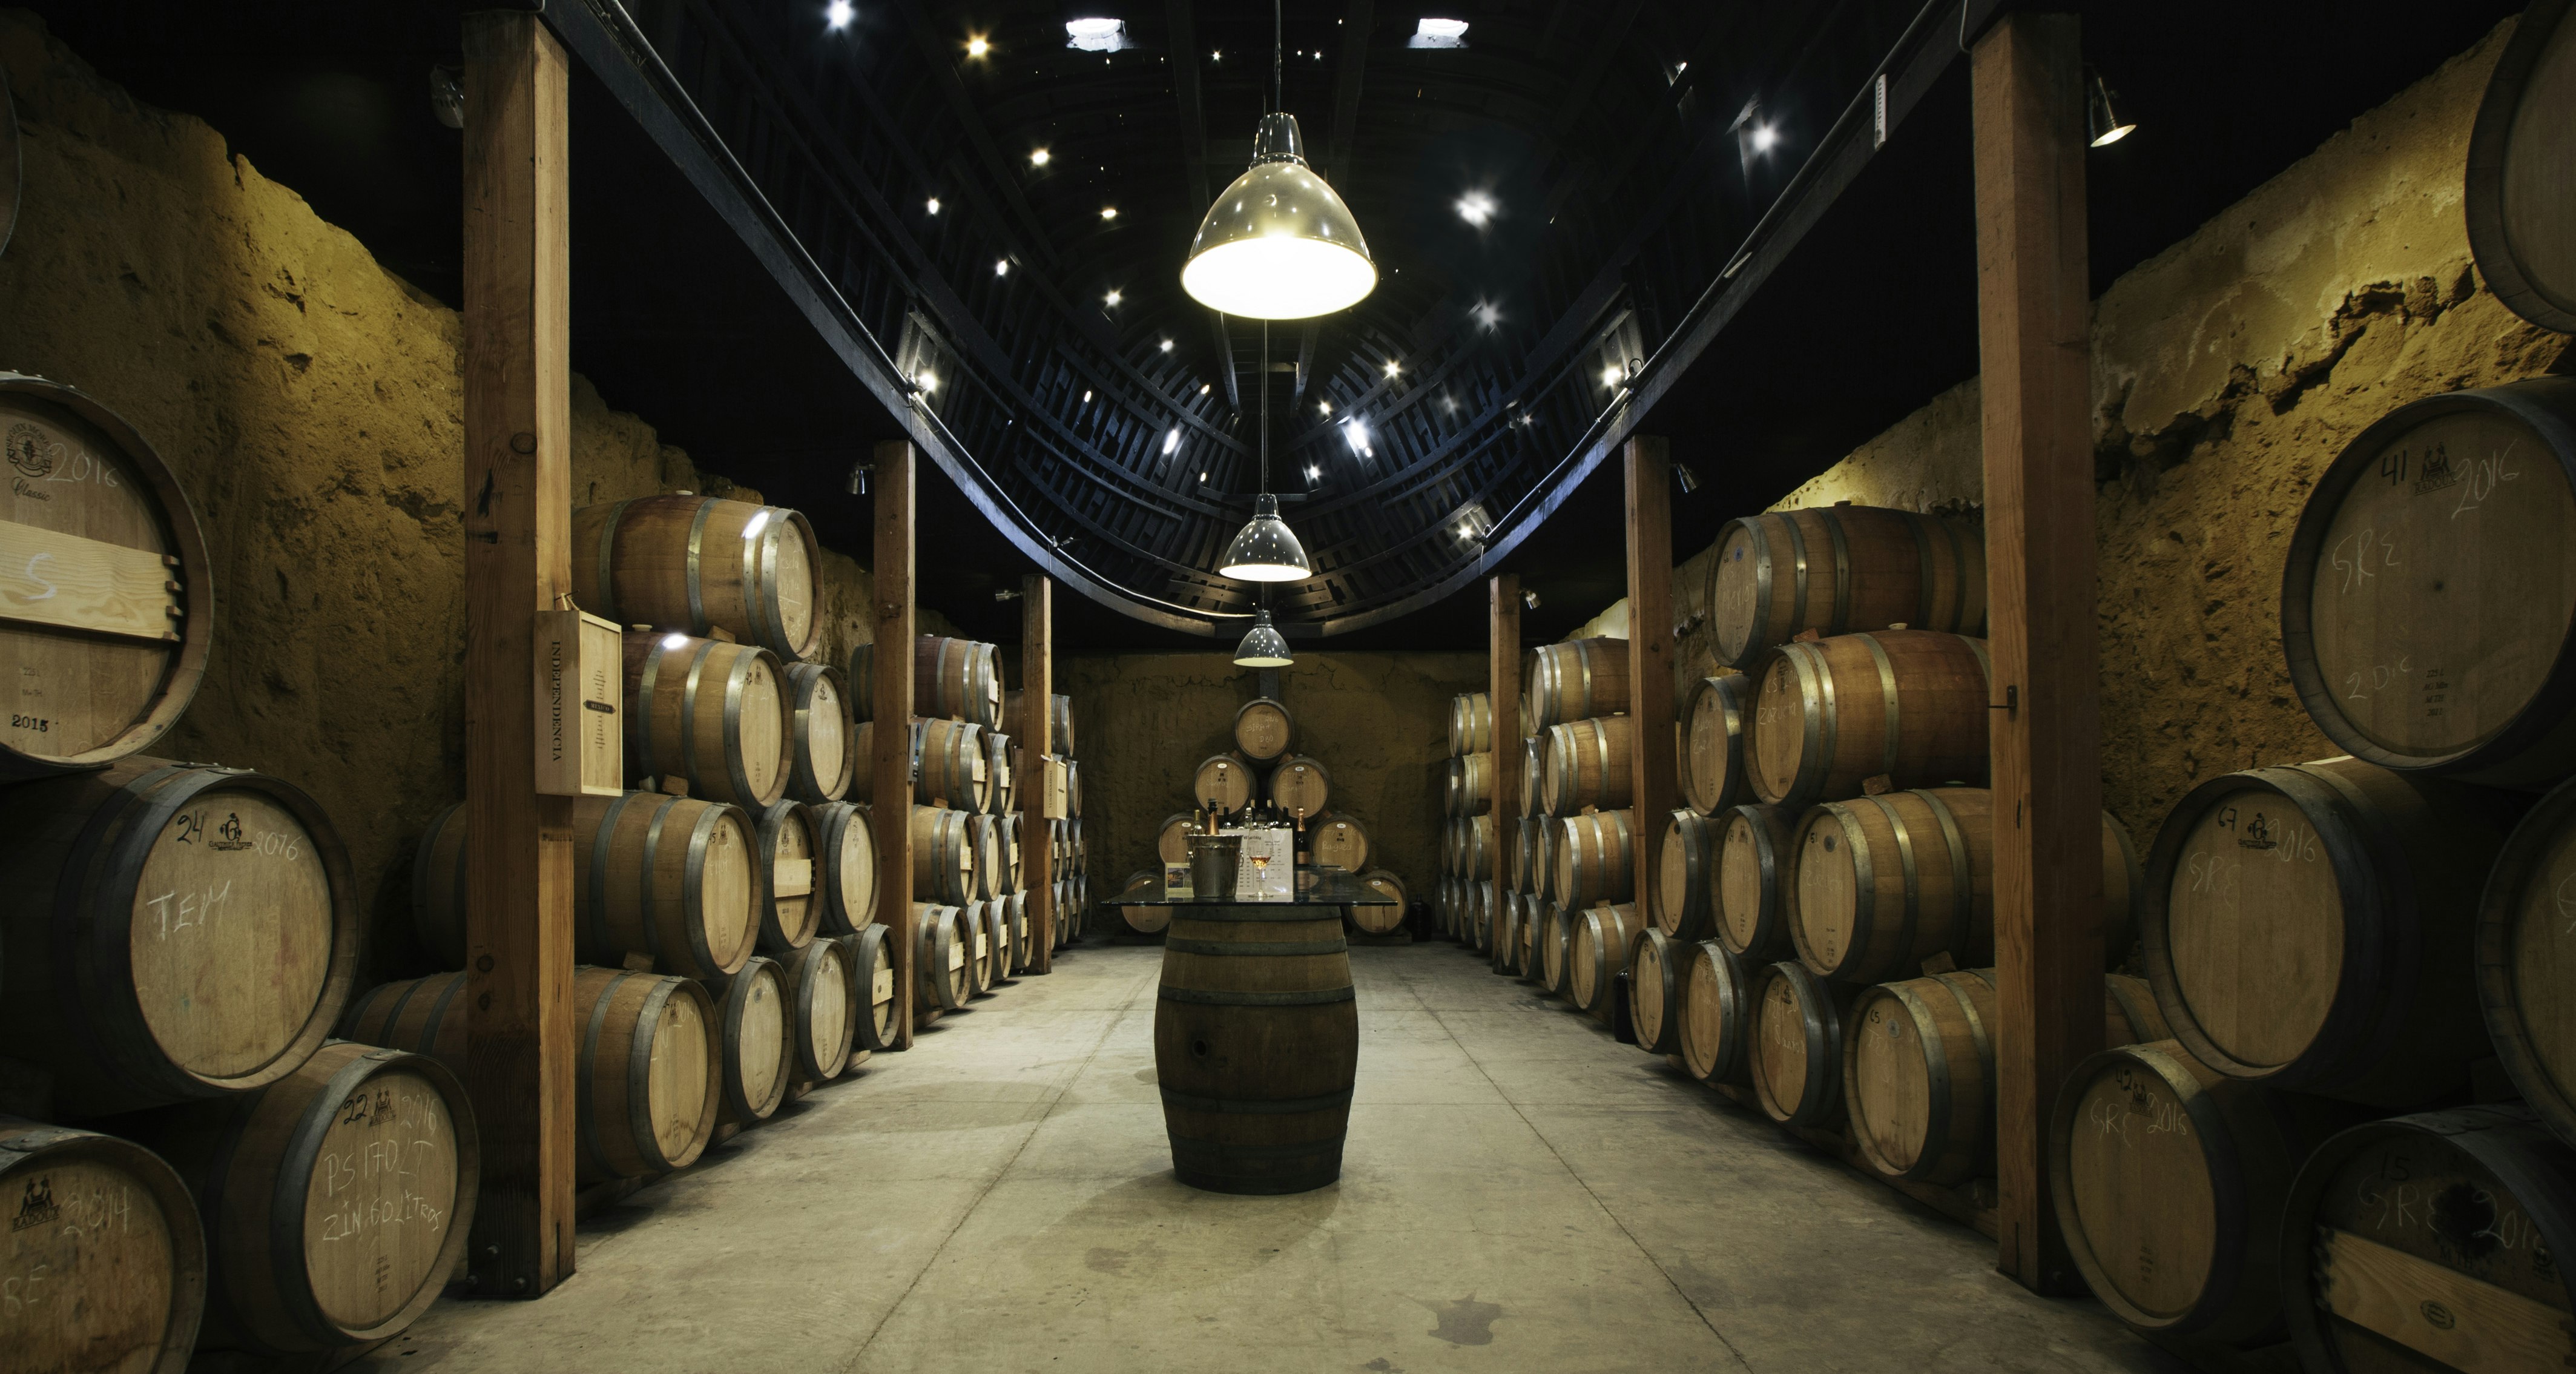 Wooden wine barrels line the walls of a dark cave